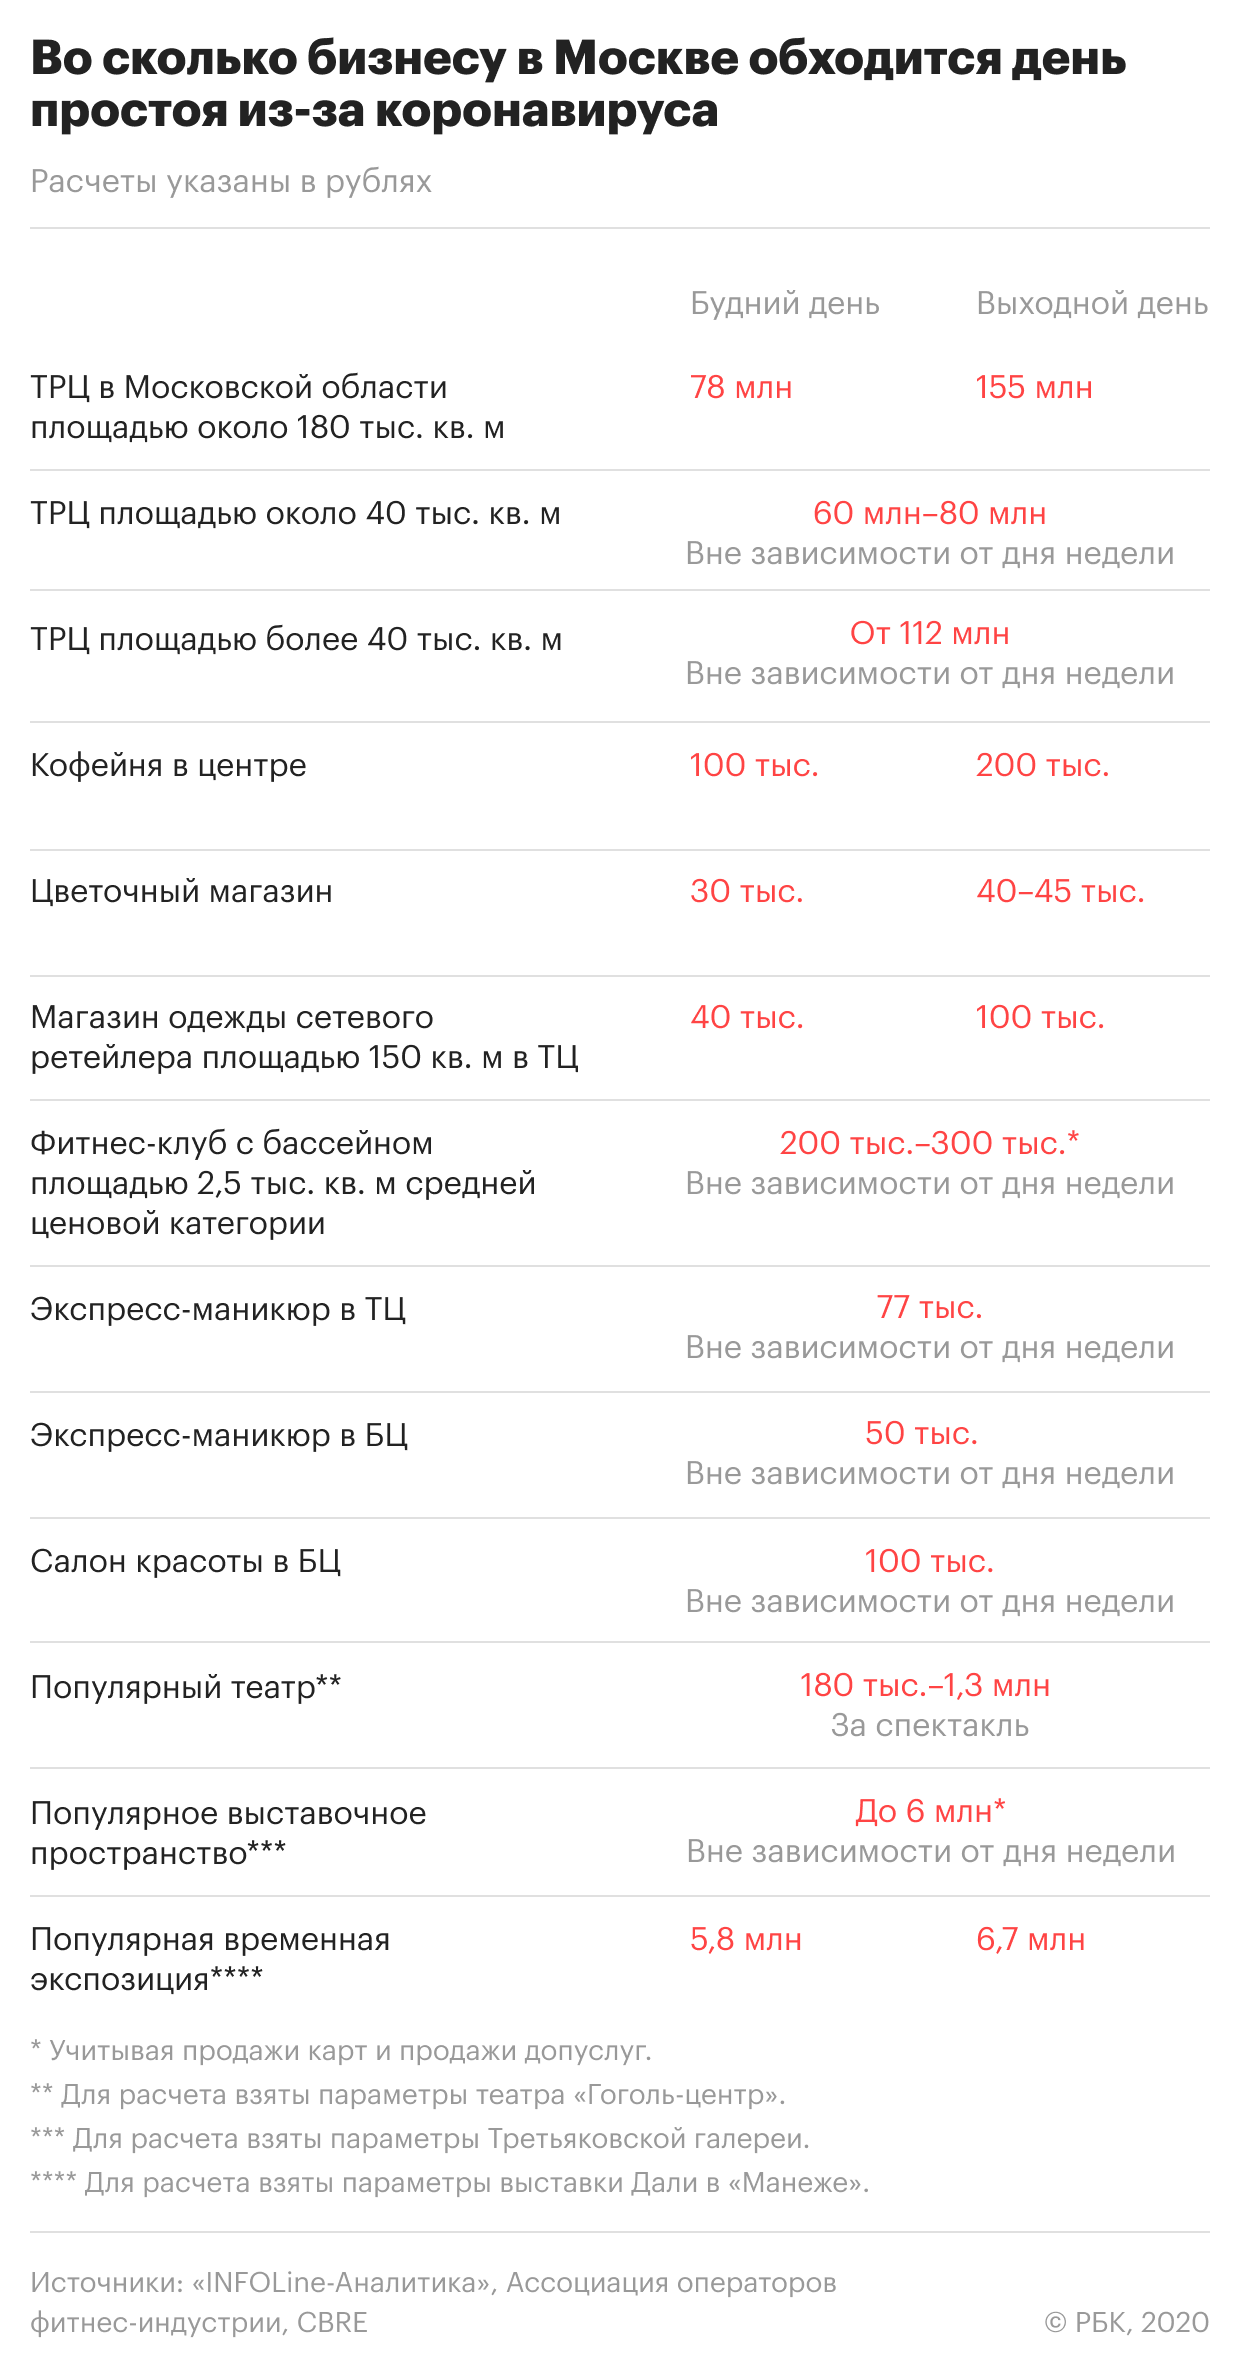 Инструкция для москвичей: что делать жителям в условиях новых ограничений